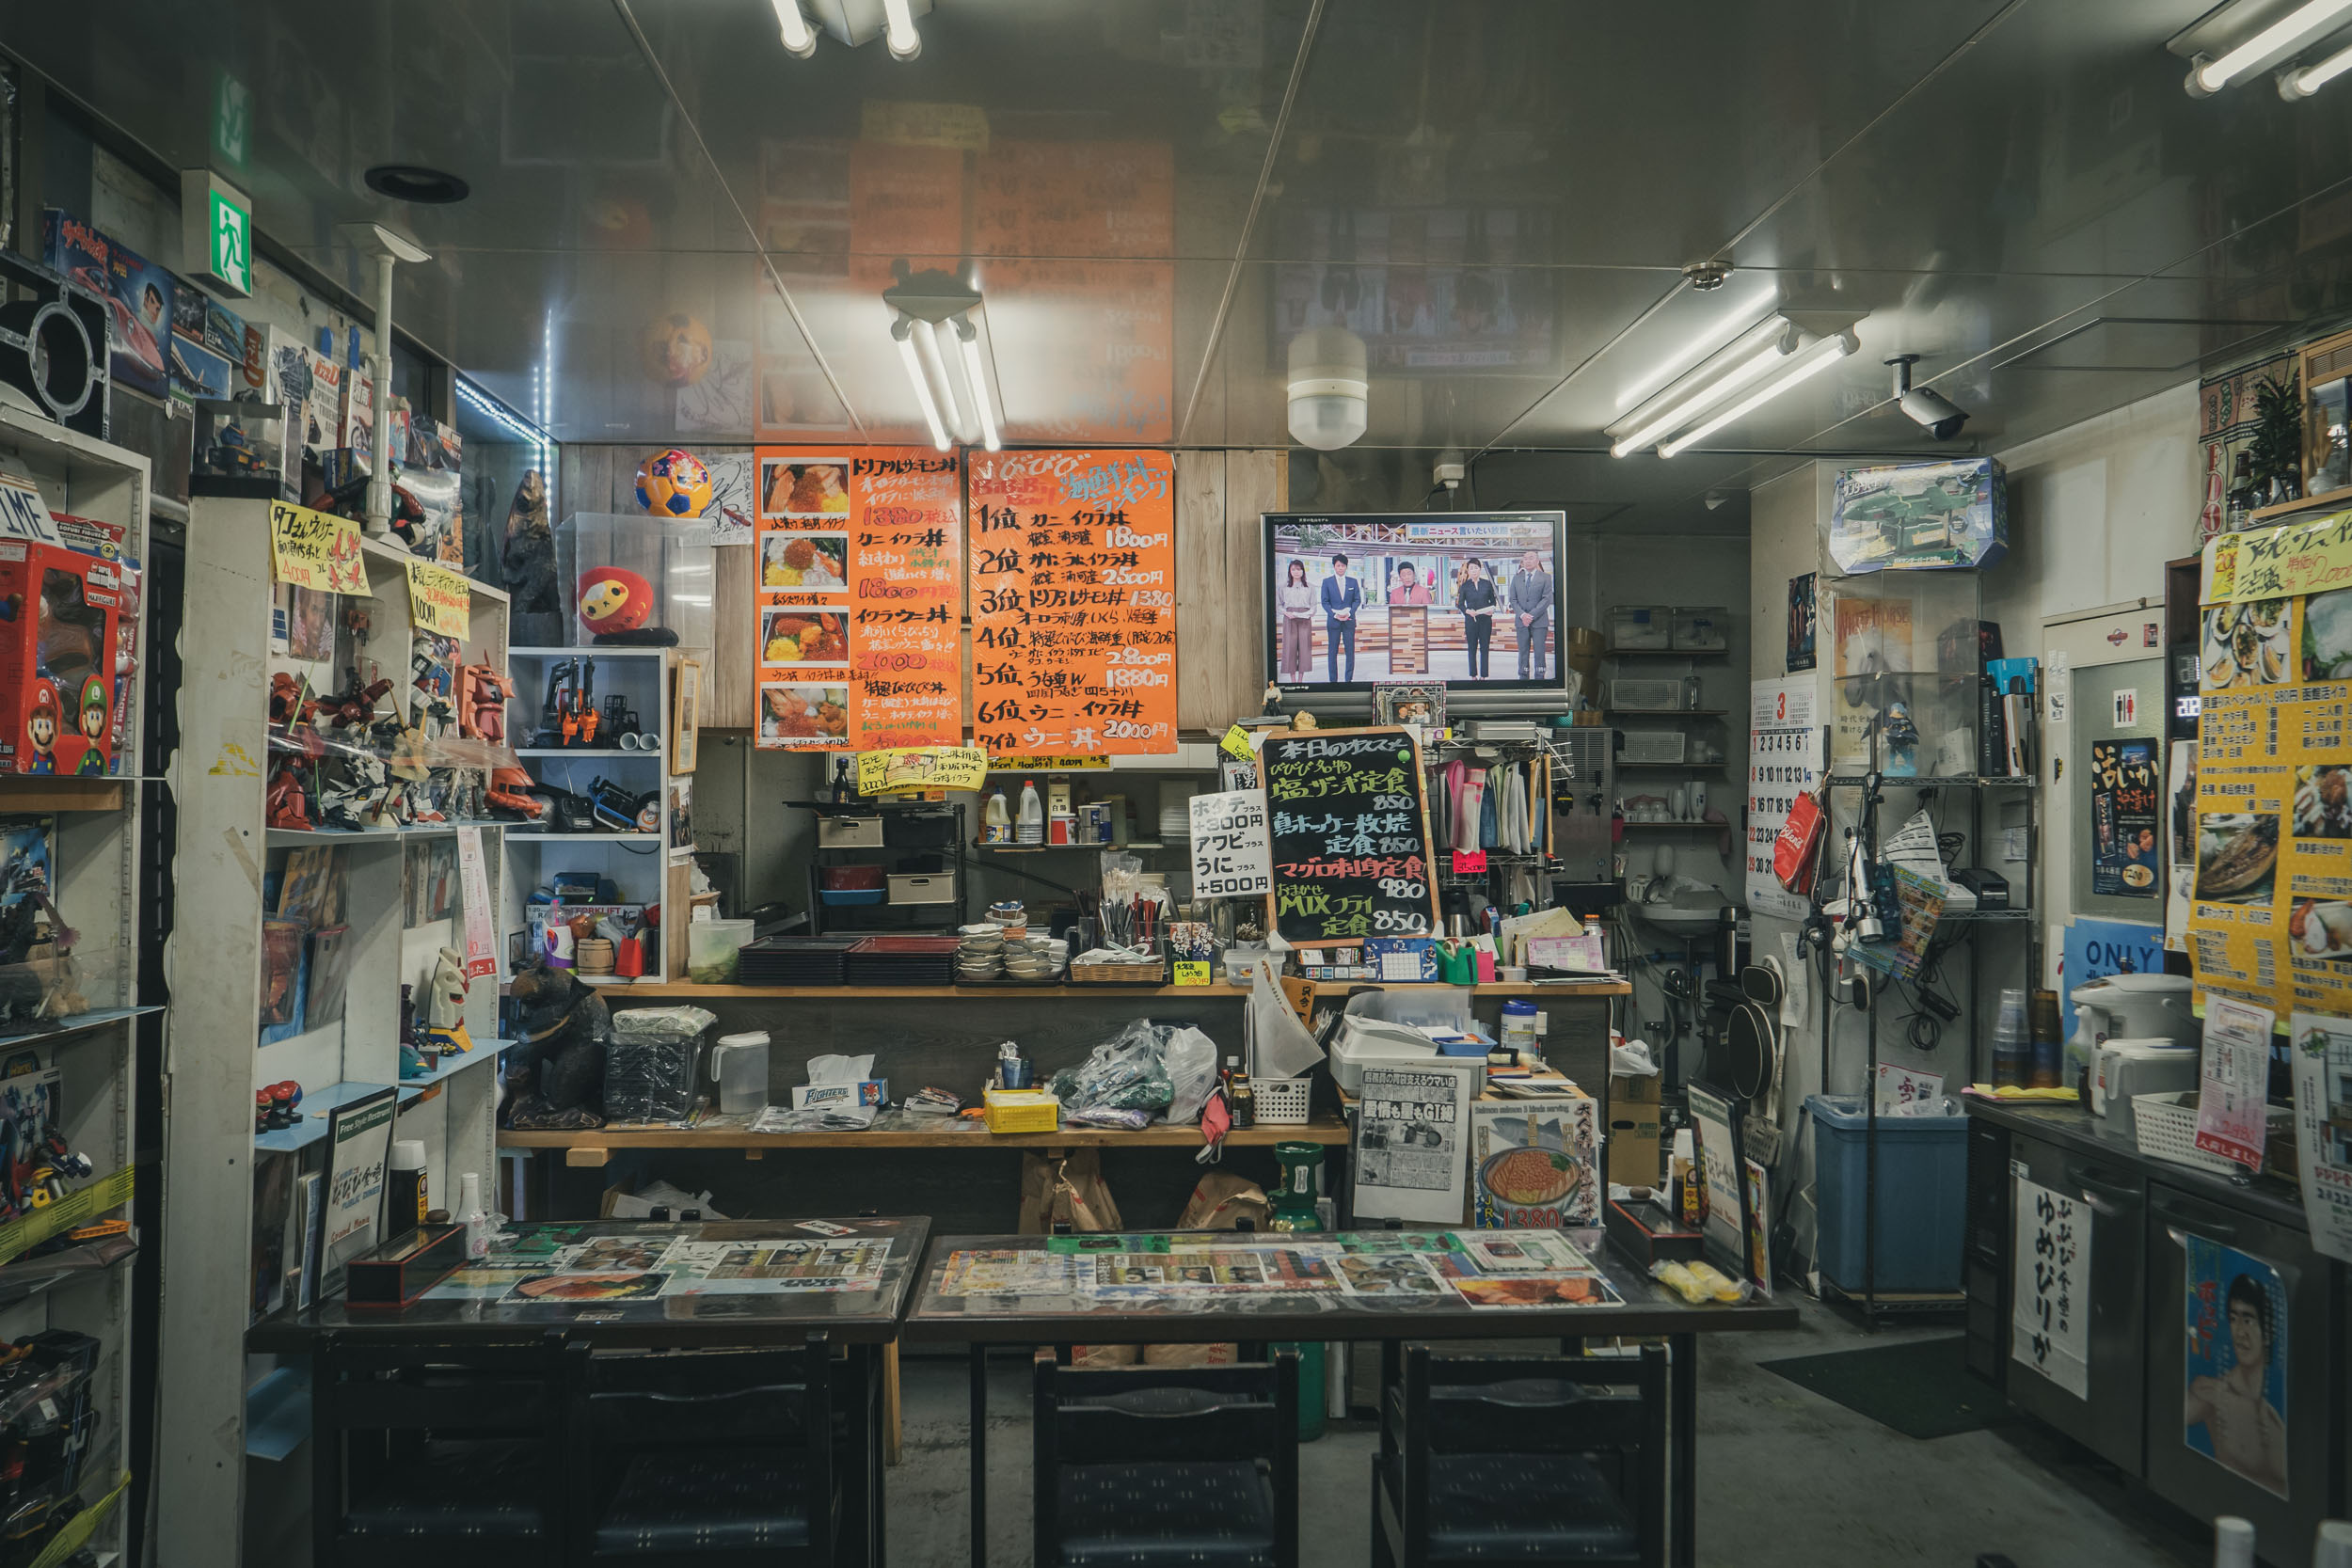 札幌市中央区北１１条西２１丁目１−１　閉店した「びびび食堂」の店内　DMC-GX8 + LEICA DG 12-60mm